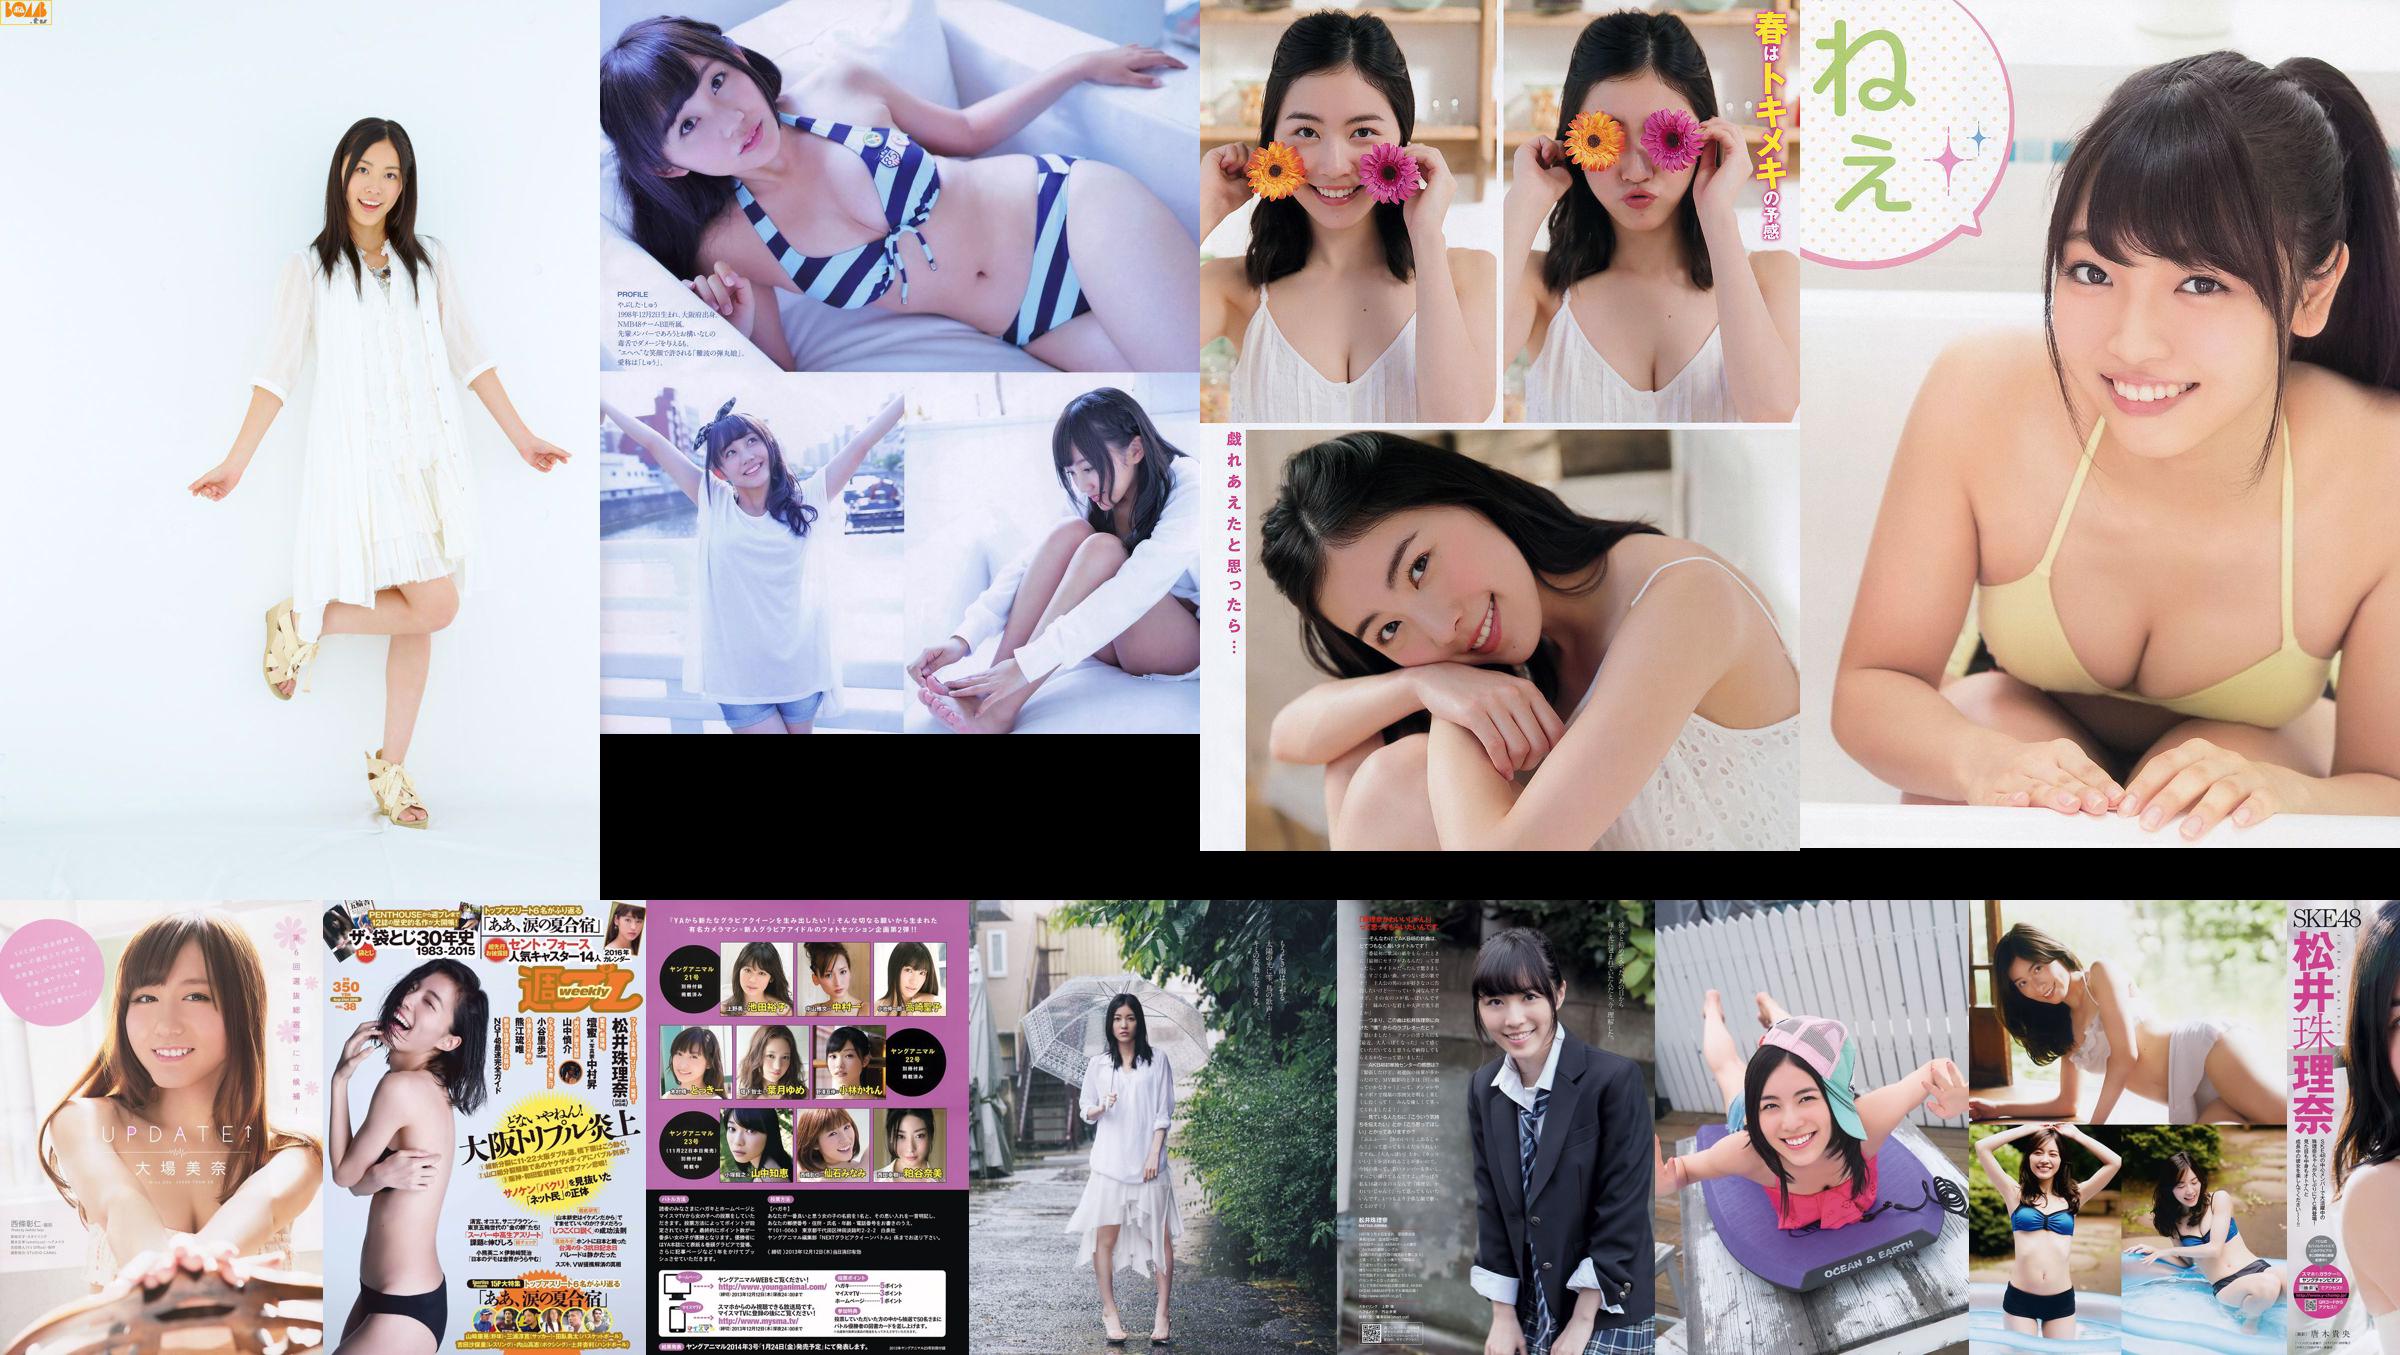 Jurina Matsui Aya Asahina Rena Kato Seiko Takasaki Mayu Watanabe Eriko Sato Ami Takeuchi Moe Amatsuka Nanano [Weekly Playboy] 2015 No.16 Photo No.fd2b94 หน้า 7